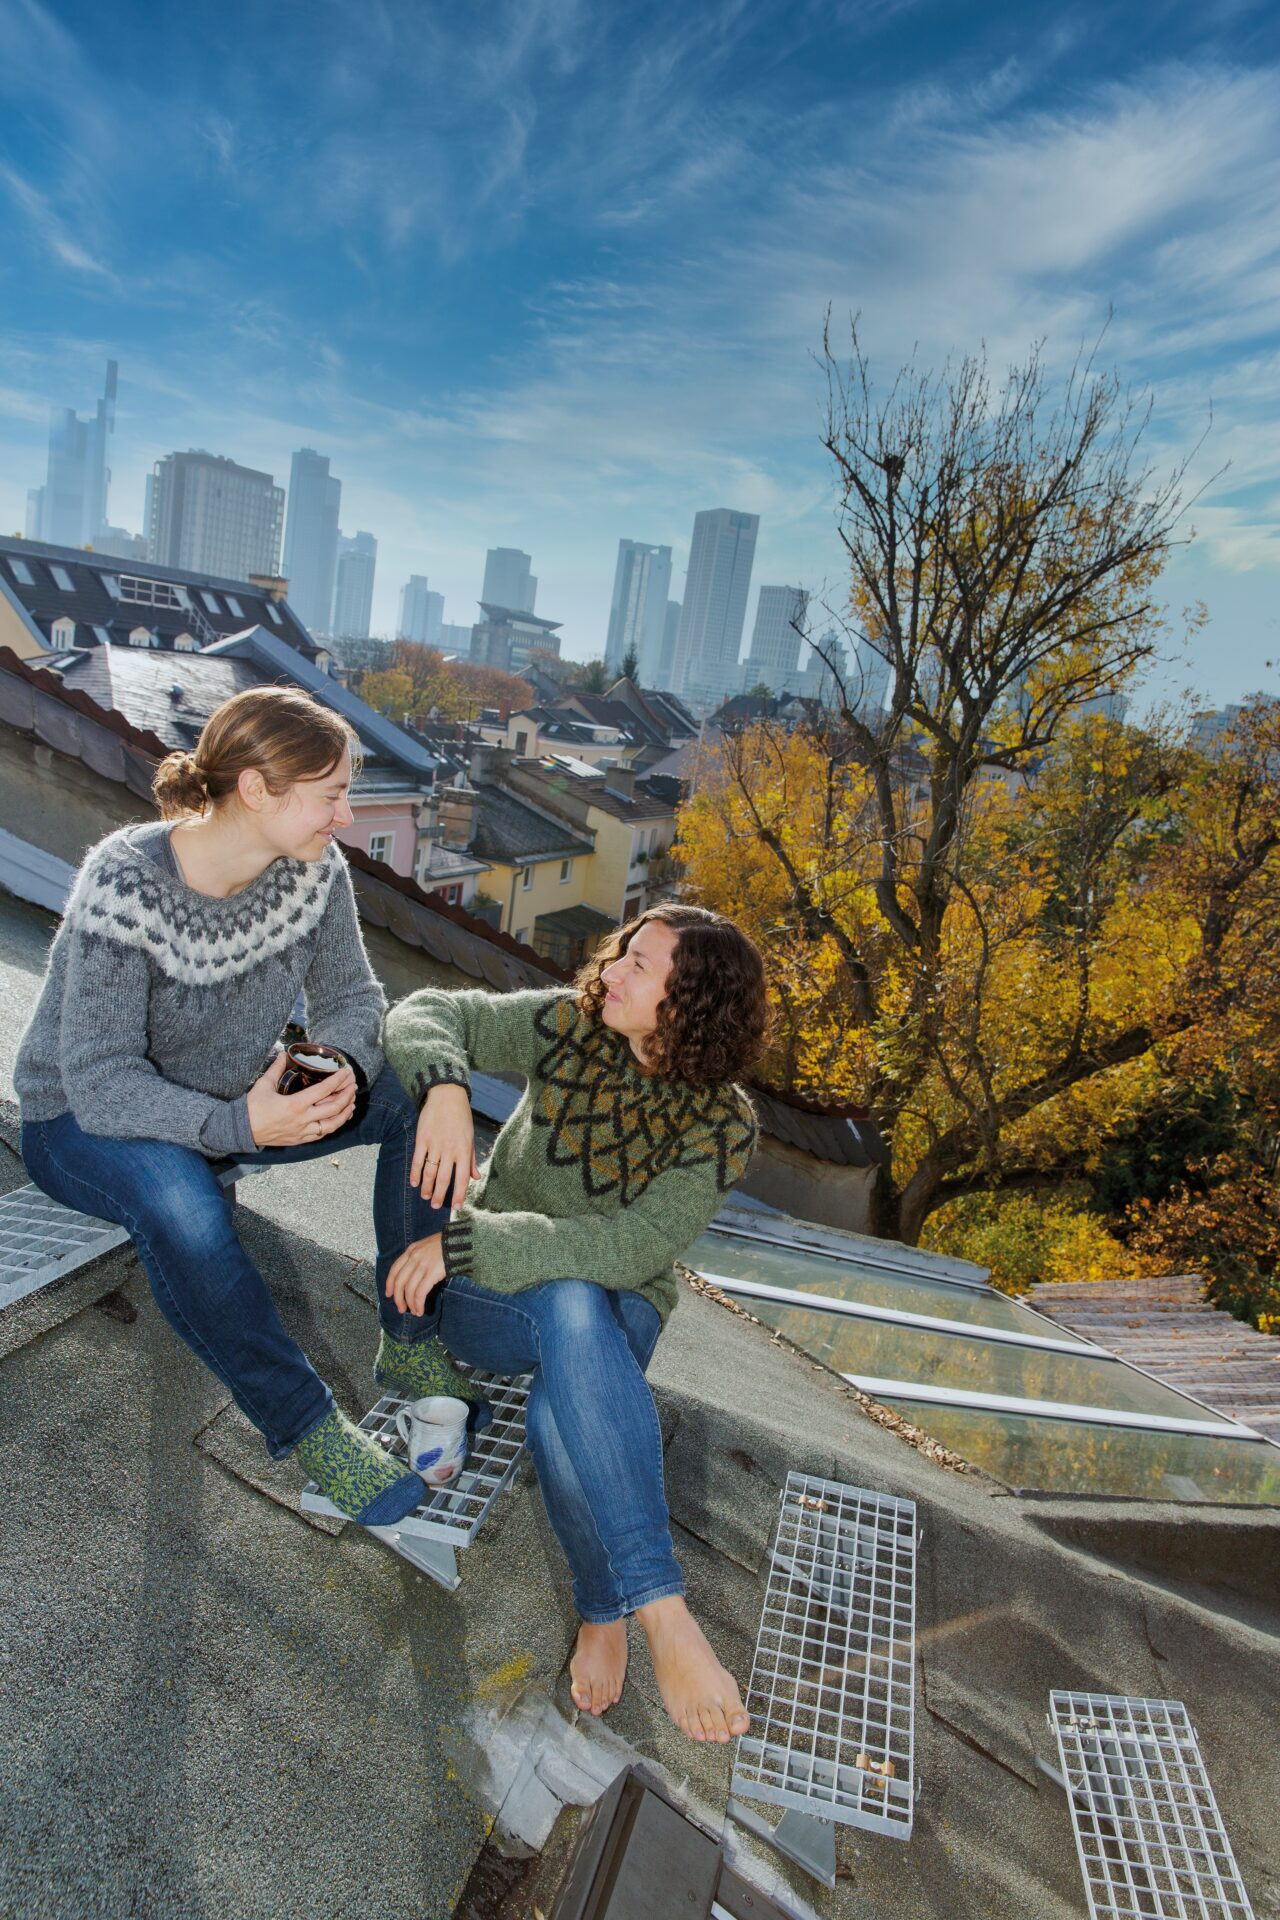 Die Autorinnen Juliane und Laura im Gespräch, auf einem Stadtdach sitzend, die Skyline im Hintergrund.